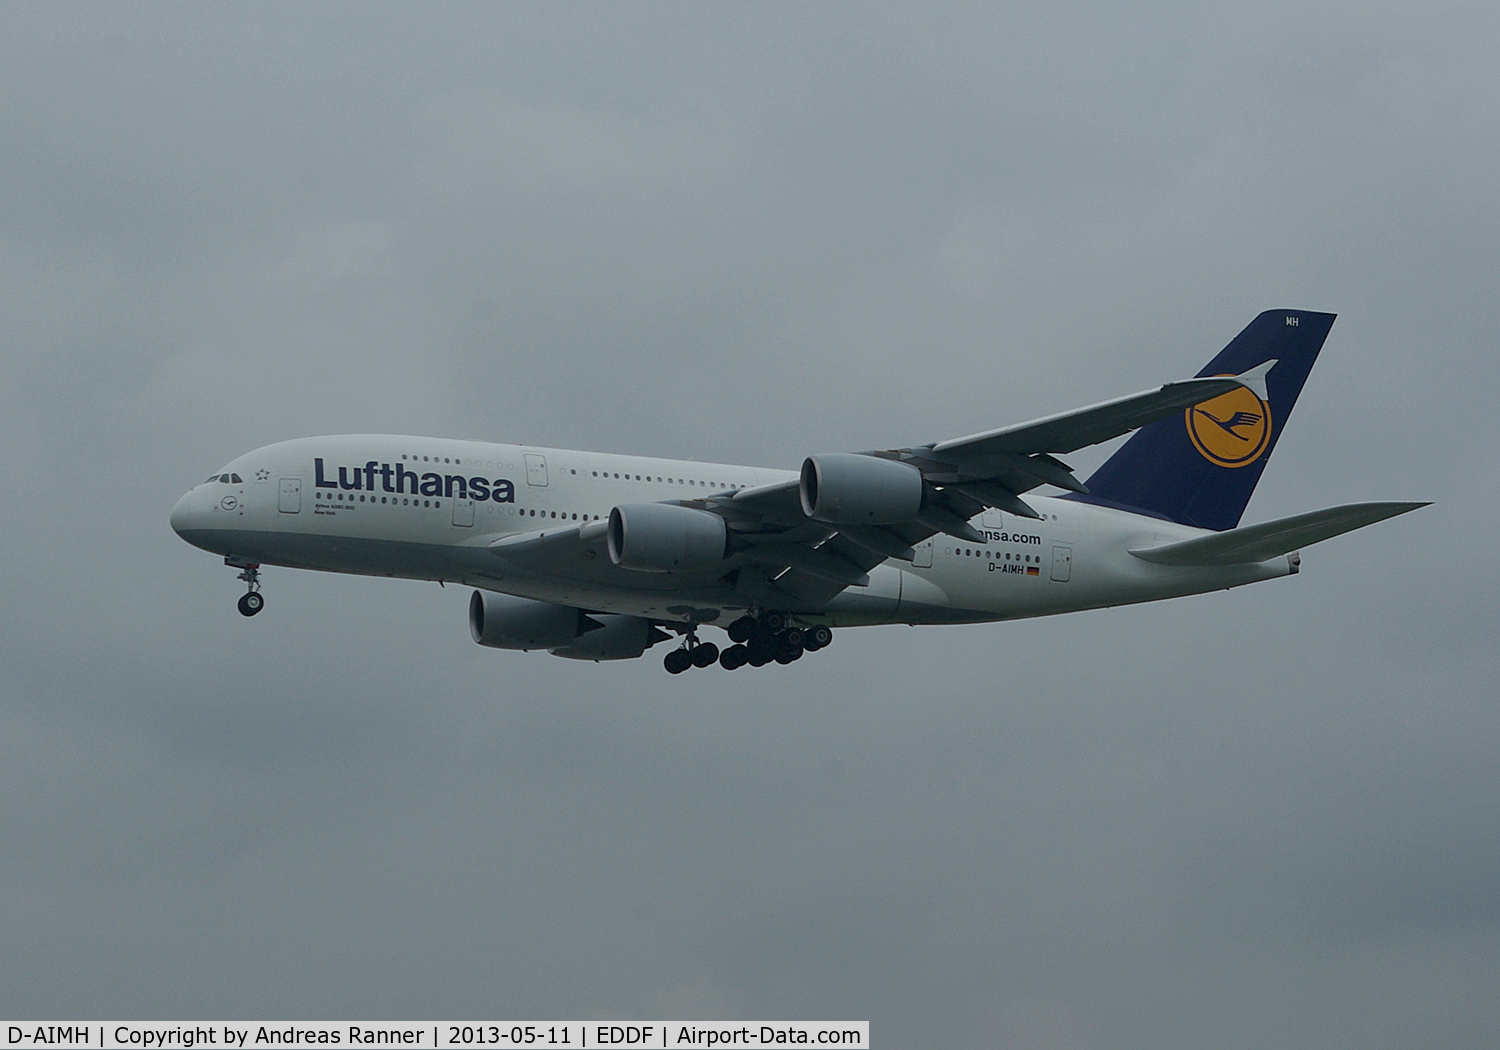 D-AIMH, 2010 Airbus A380-841 C/N 070, Lufthansa Airbus A380